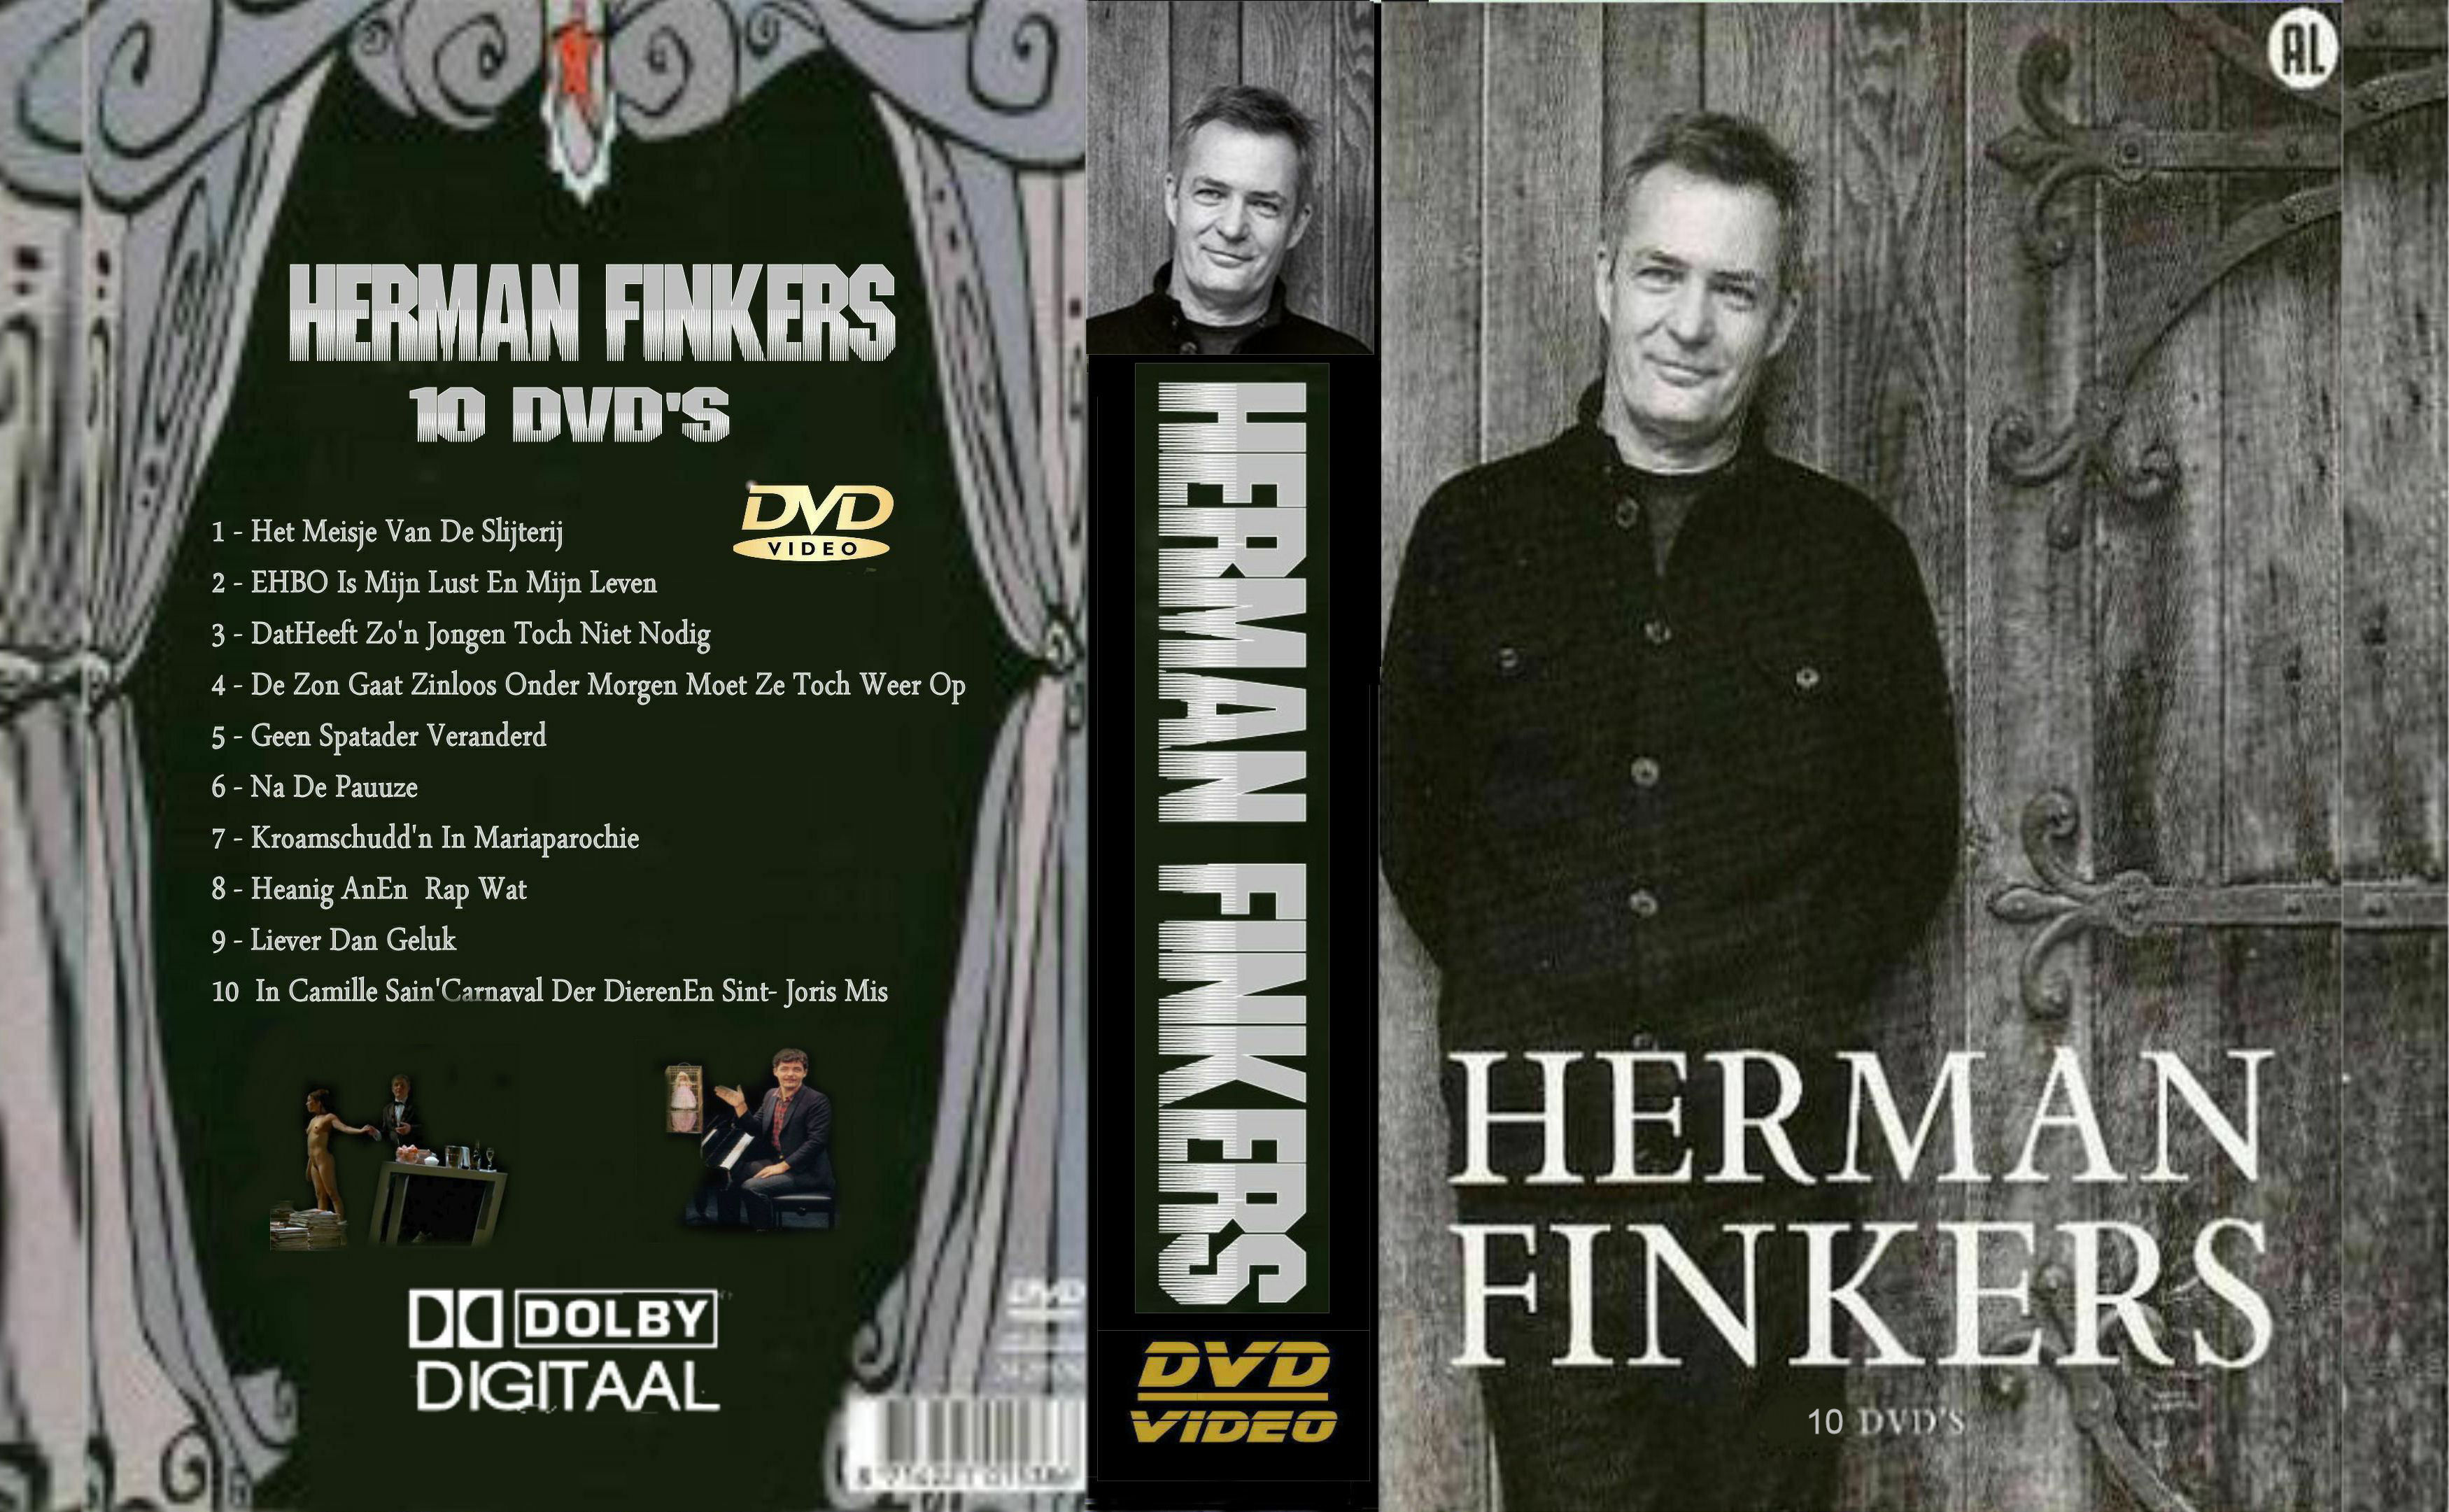 Herman Finkers Collectie DvD 6